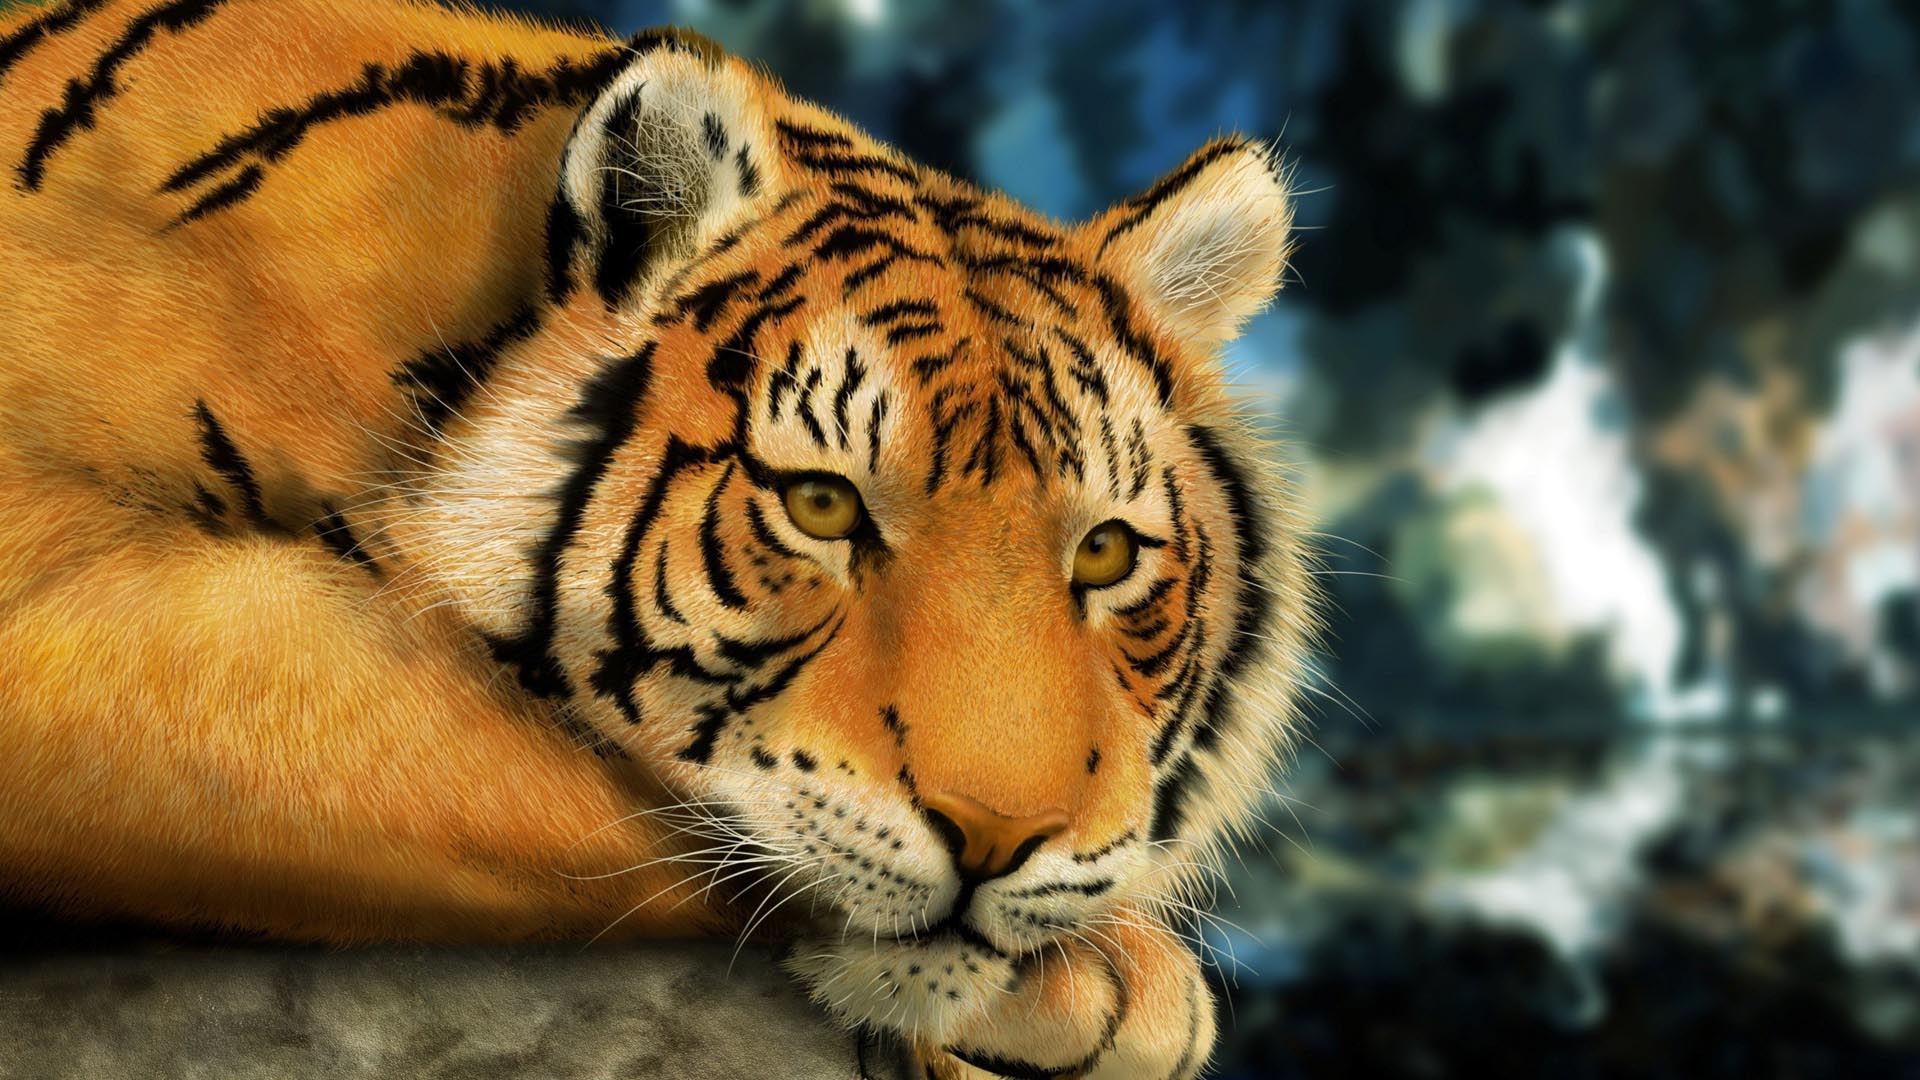 tiger hd wallpaper,tiger,tierwelt,landtier,bengalischer tiger,schnurrhaare